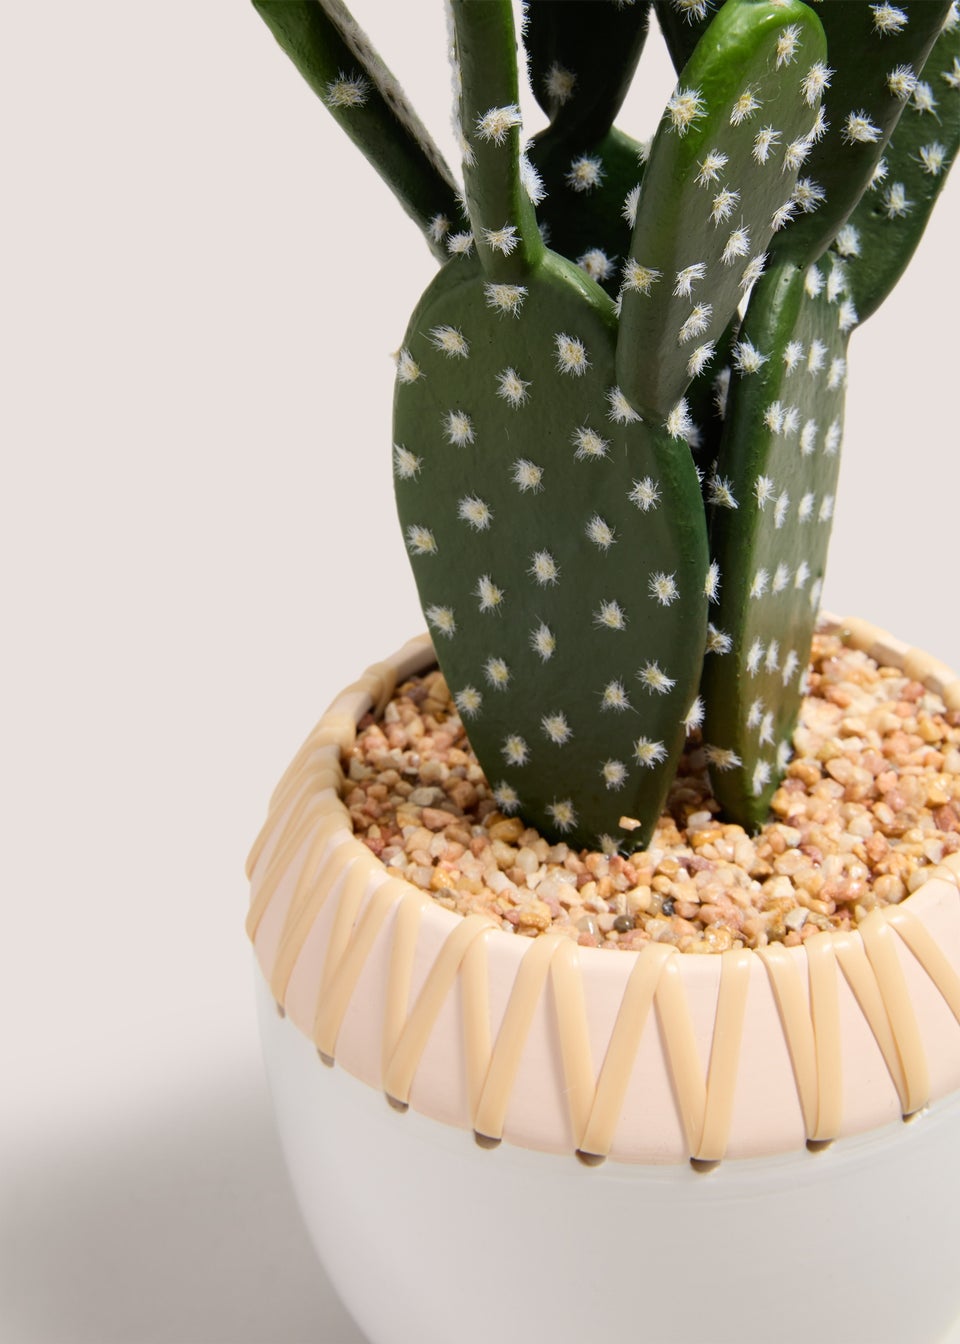 Cactus Plant (50cm x 22cm x 18cm)